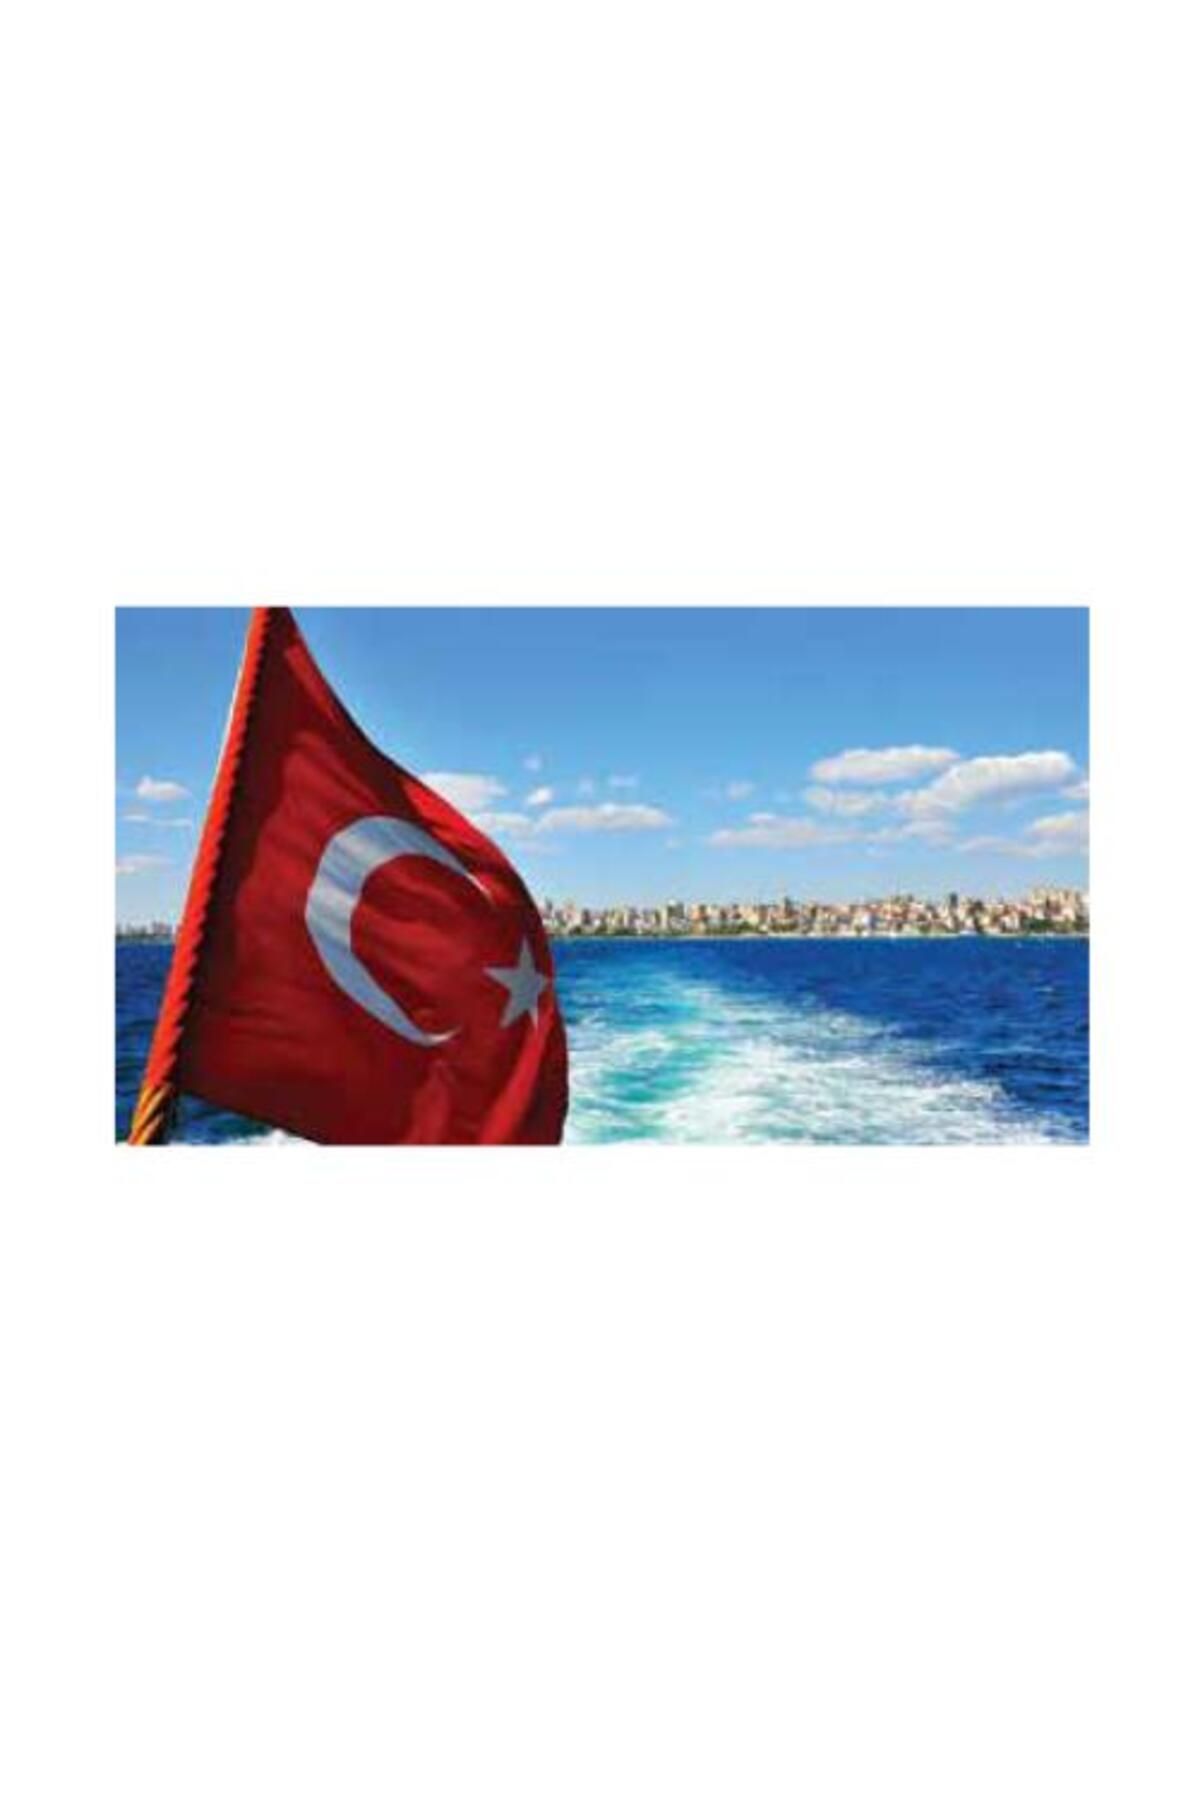 KALE Türk Bayrağı 300x450cm